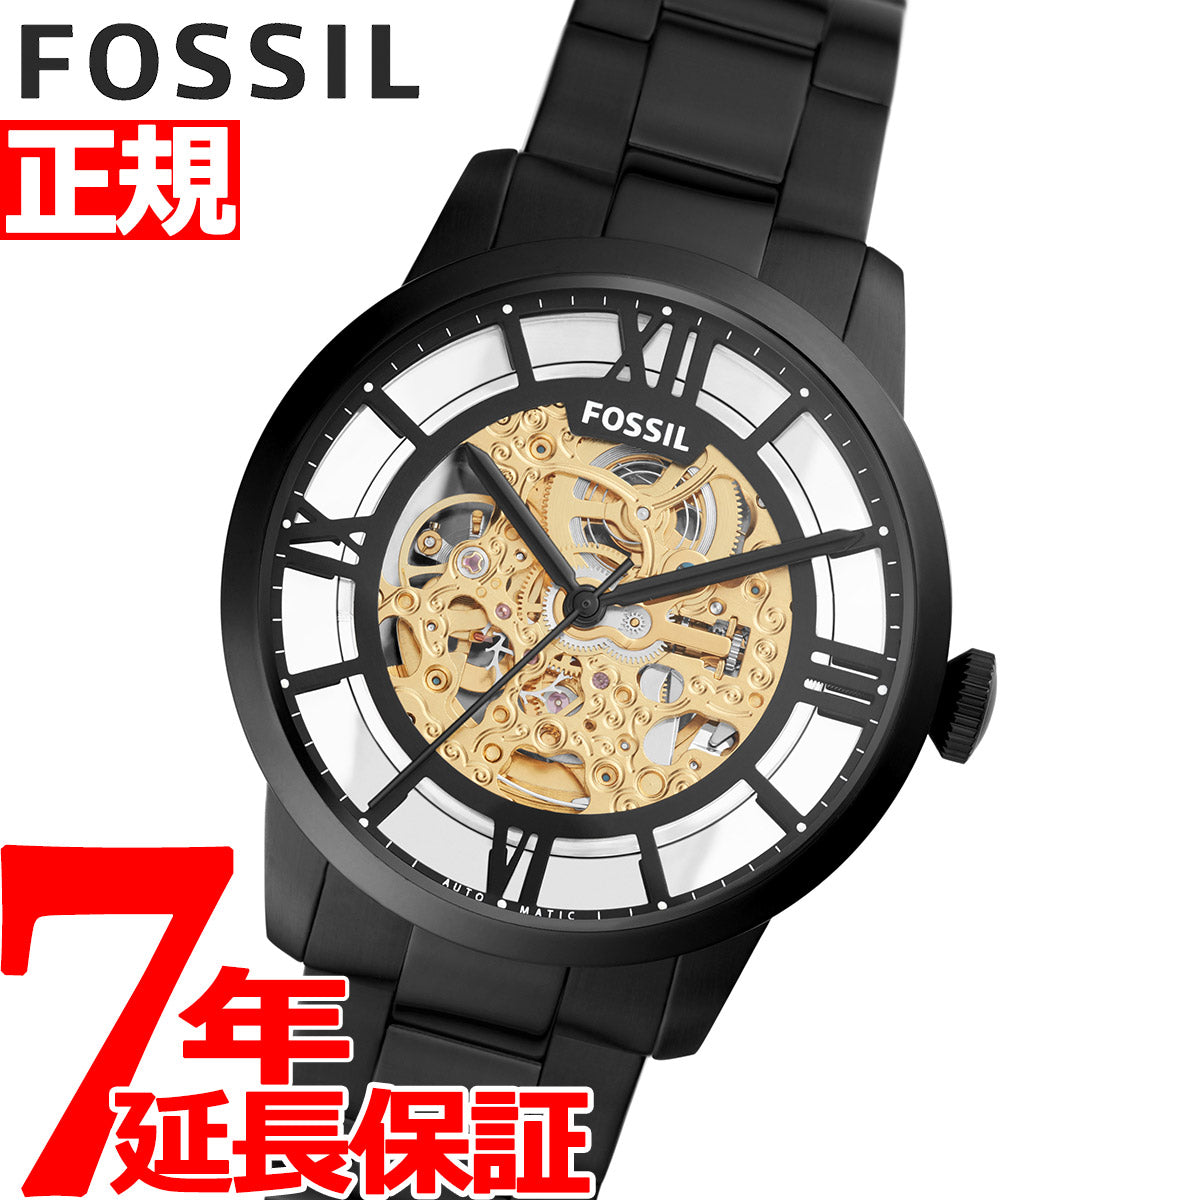 代引可】 fossil 腕時計 腕時計(アナログ) - leica-camera.blog